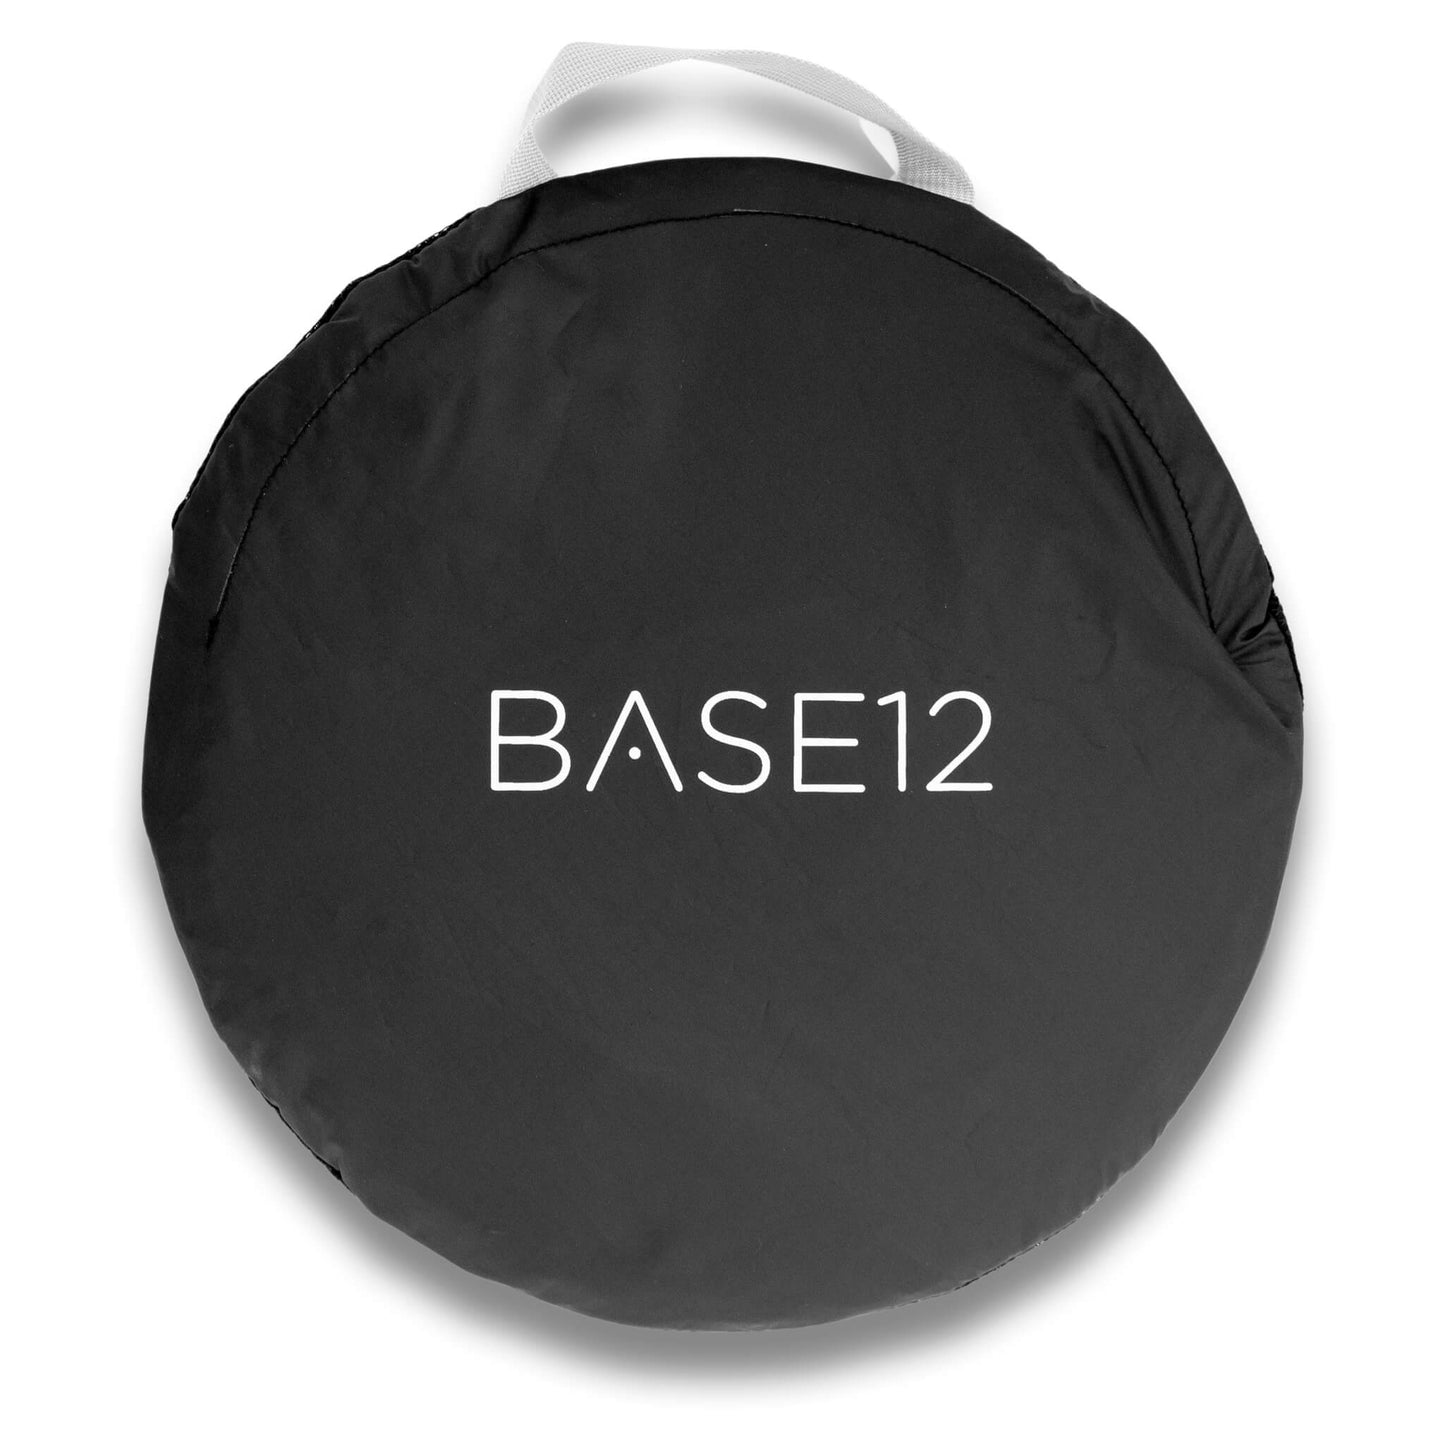 Base12 Laptop Shade